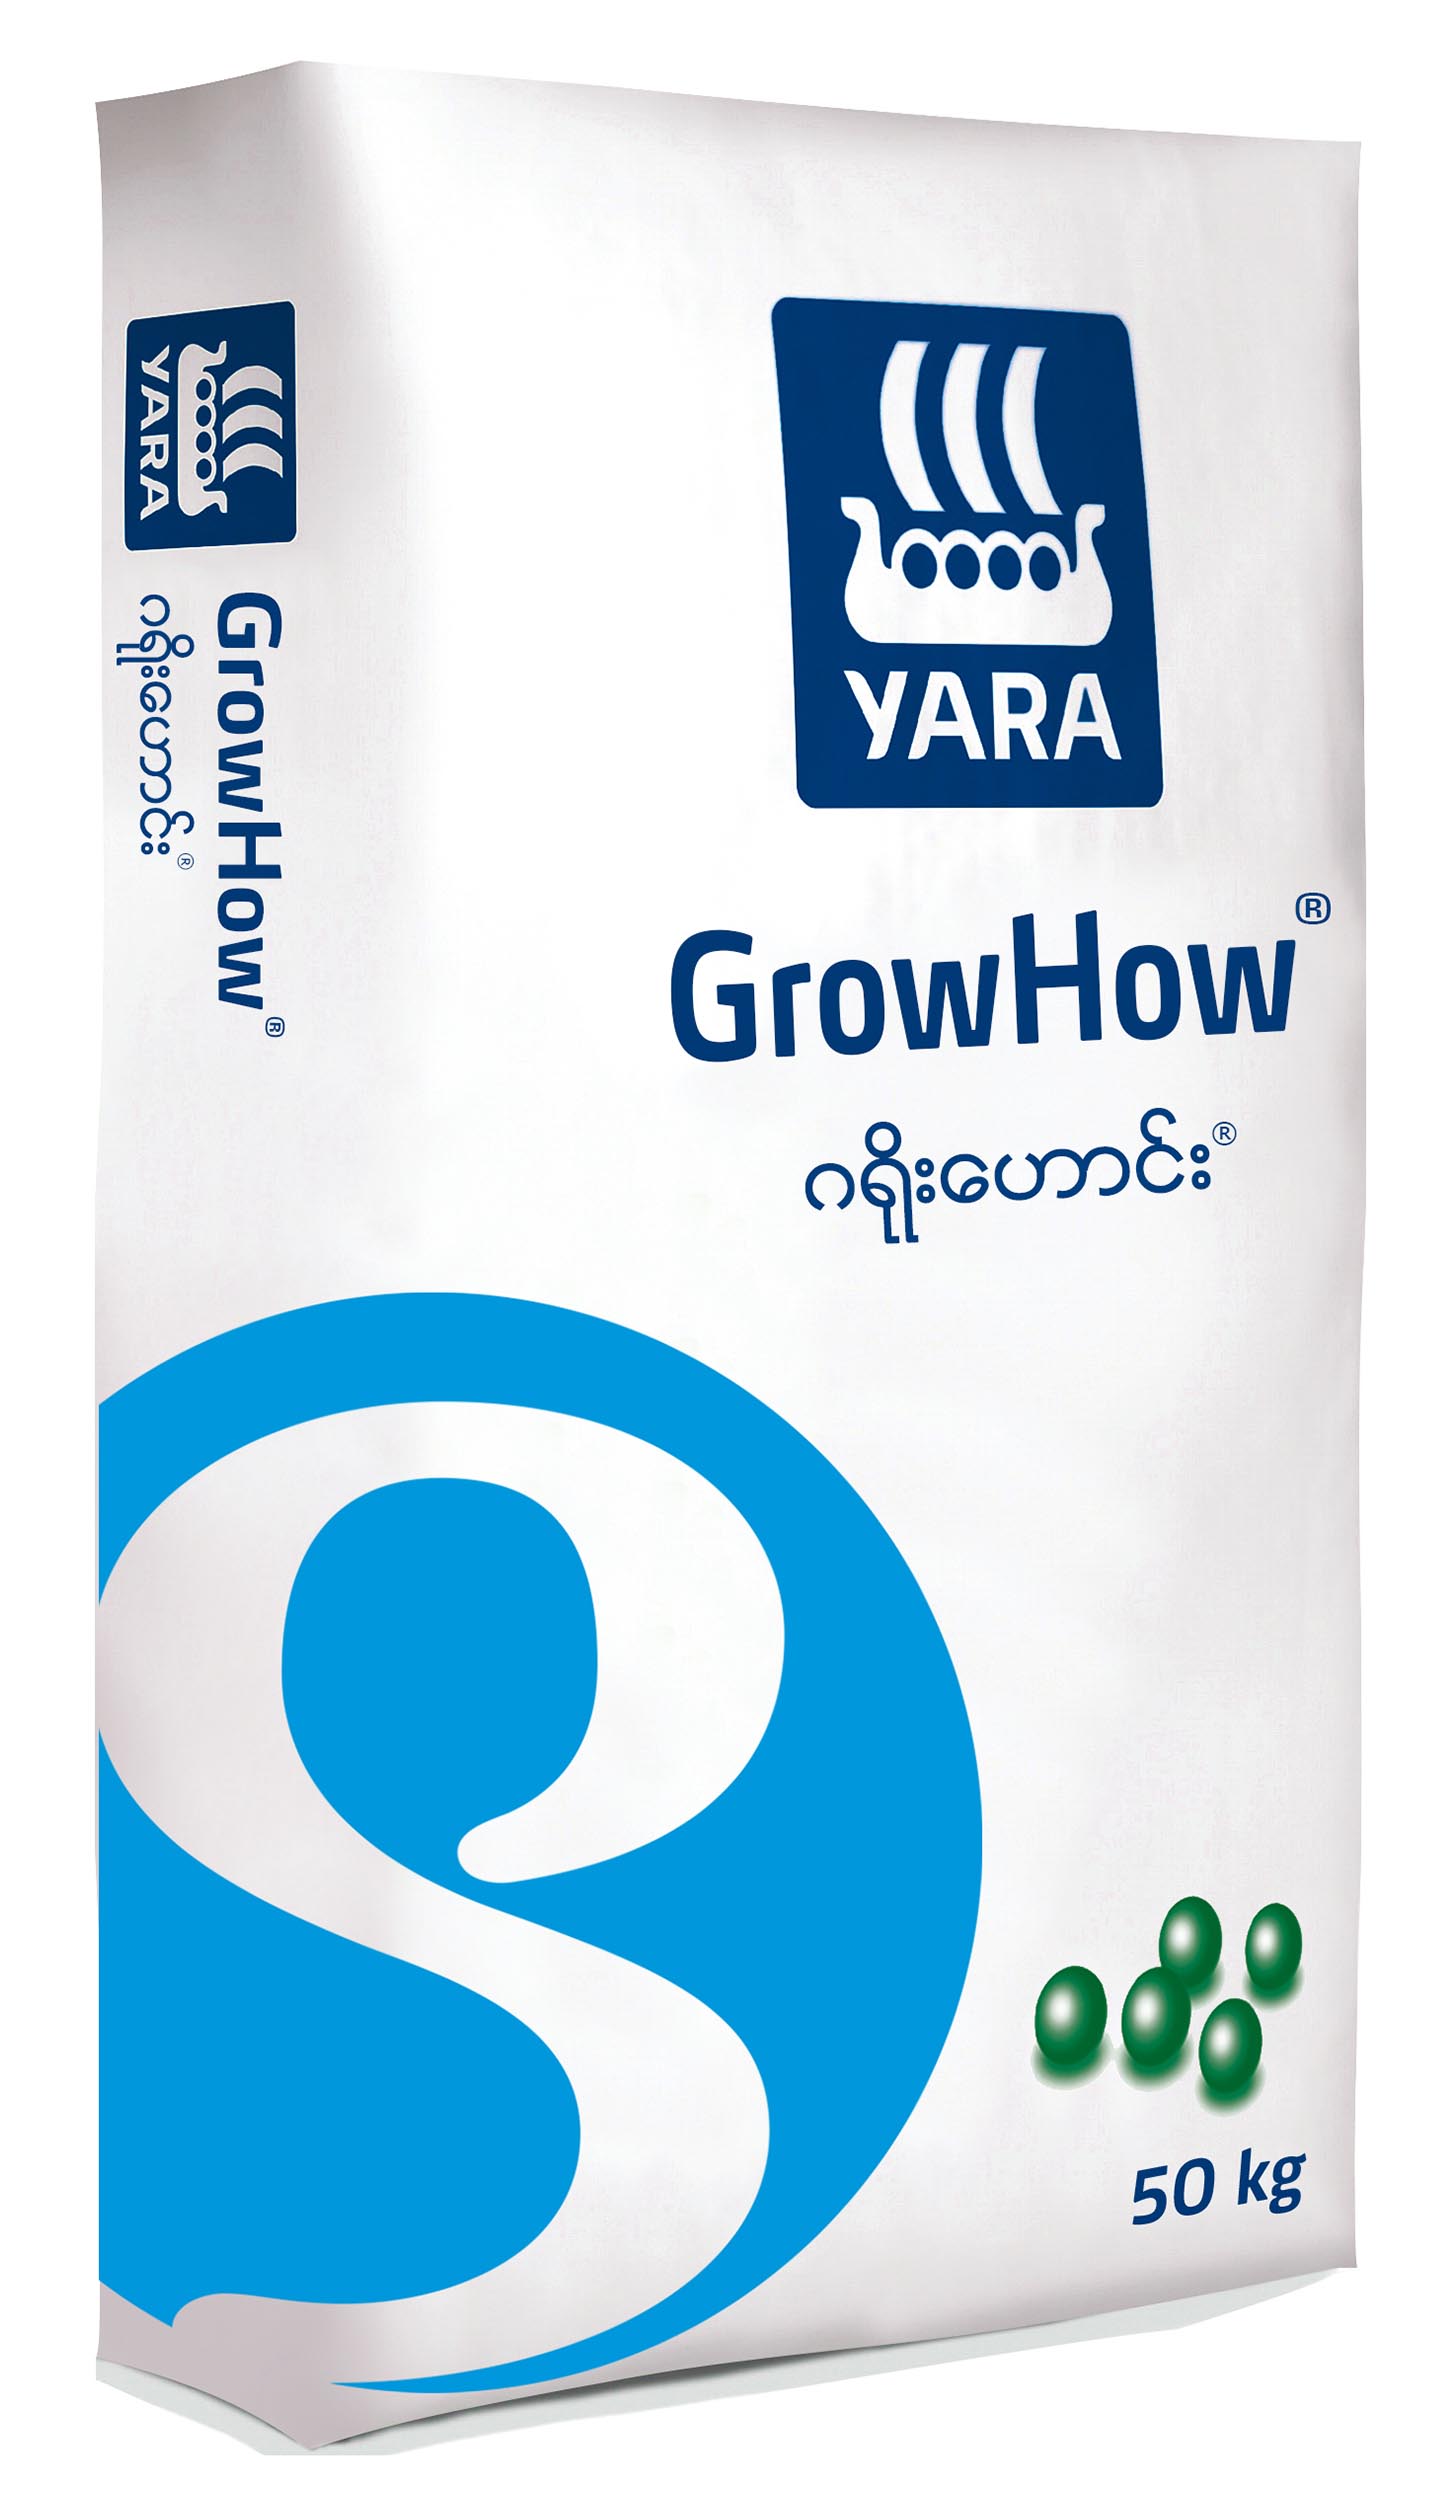 GrowHow